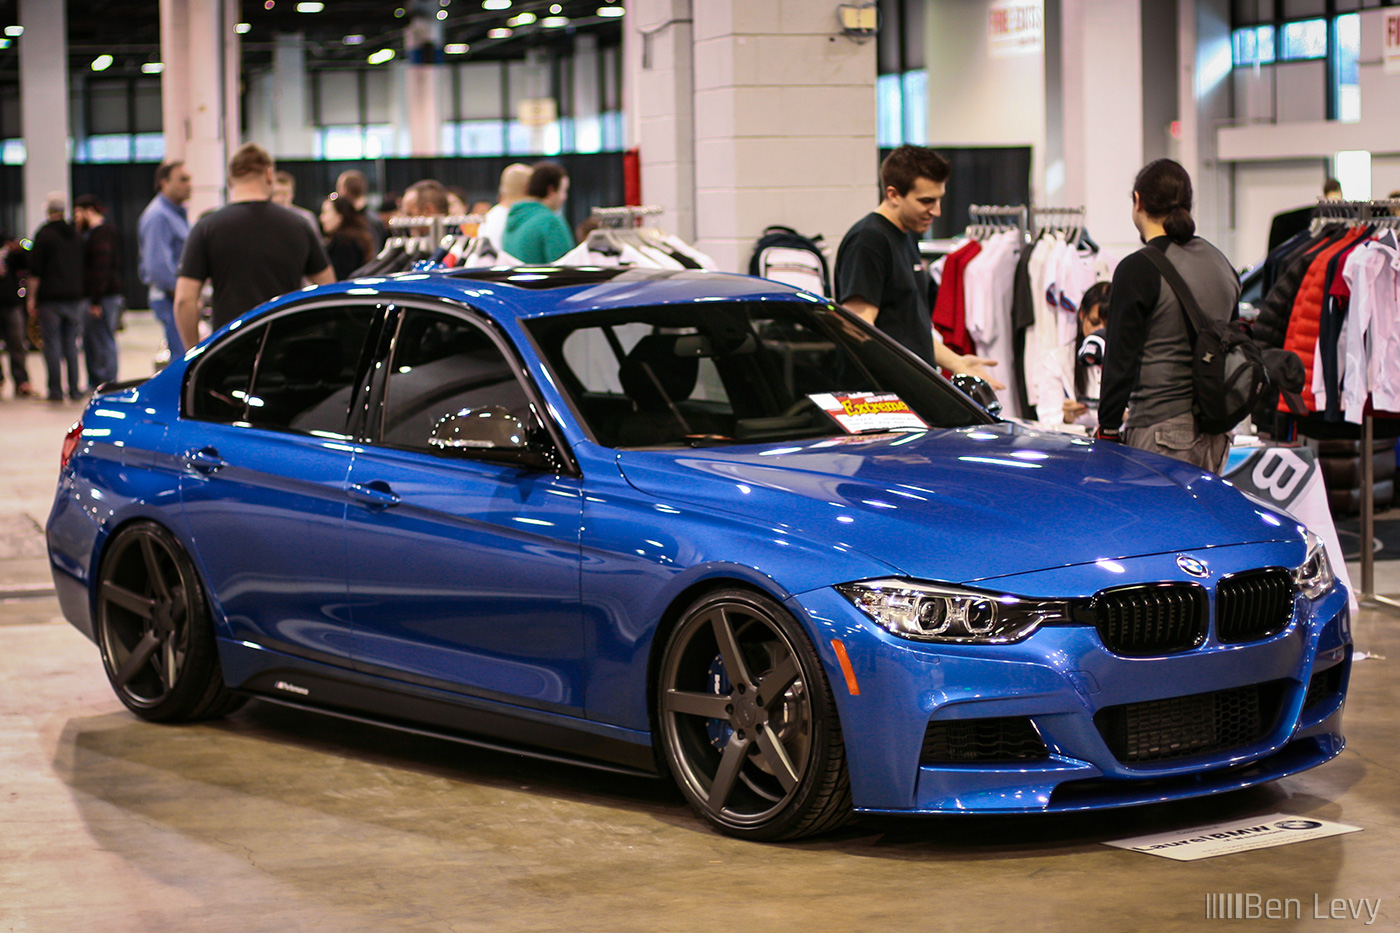 Blue BMW 335i